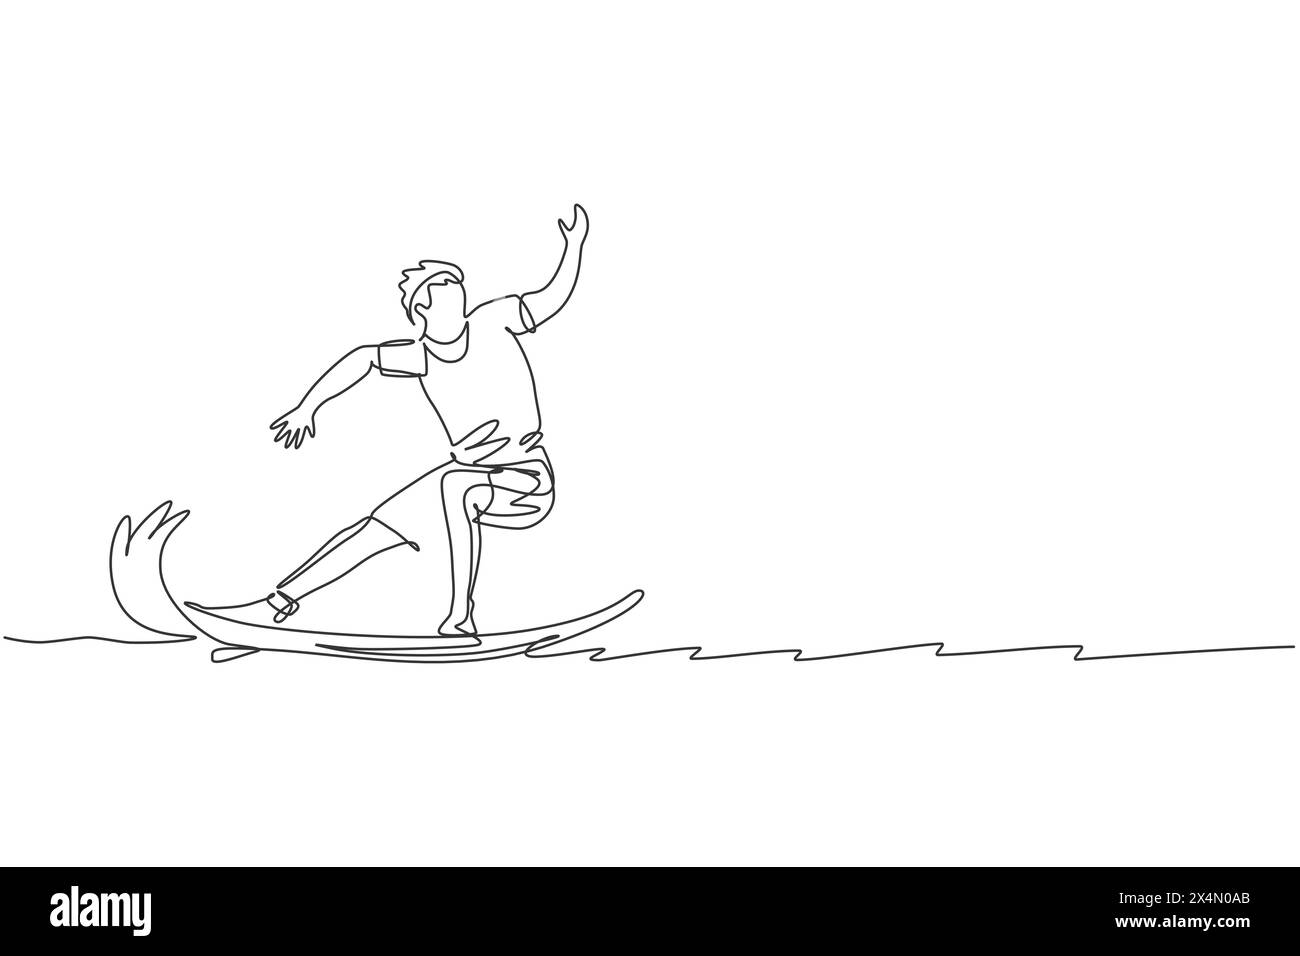 Ligne continue unique dessinant jeune surfeur professionnel en action chevauchant les vagues sur l'océan bleu. Concept de sports nautiques extrêmes. Vacances d'été. Tendance Illustration de Vecteur